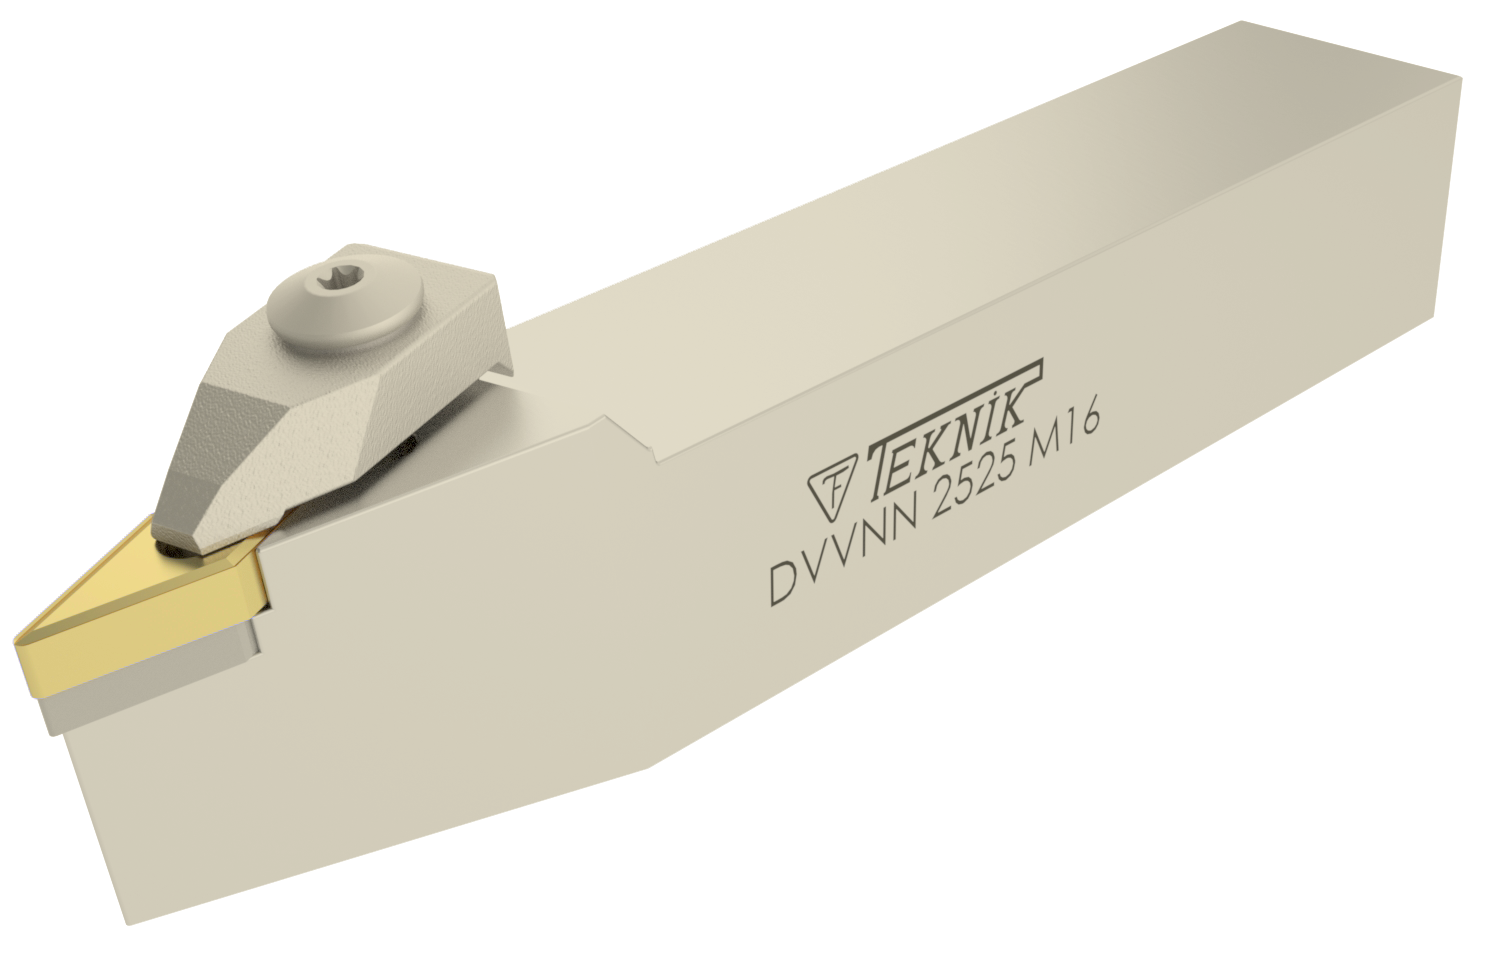 Klemmhalter DVVN auf weißem Hintergrund. Mit einer Wendeplatte des Typs VN--. Auf der Seite des Werkzeugs befinden sich das Logo des Herstellers und der Artikelcode.